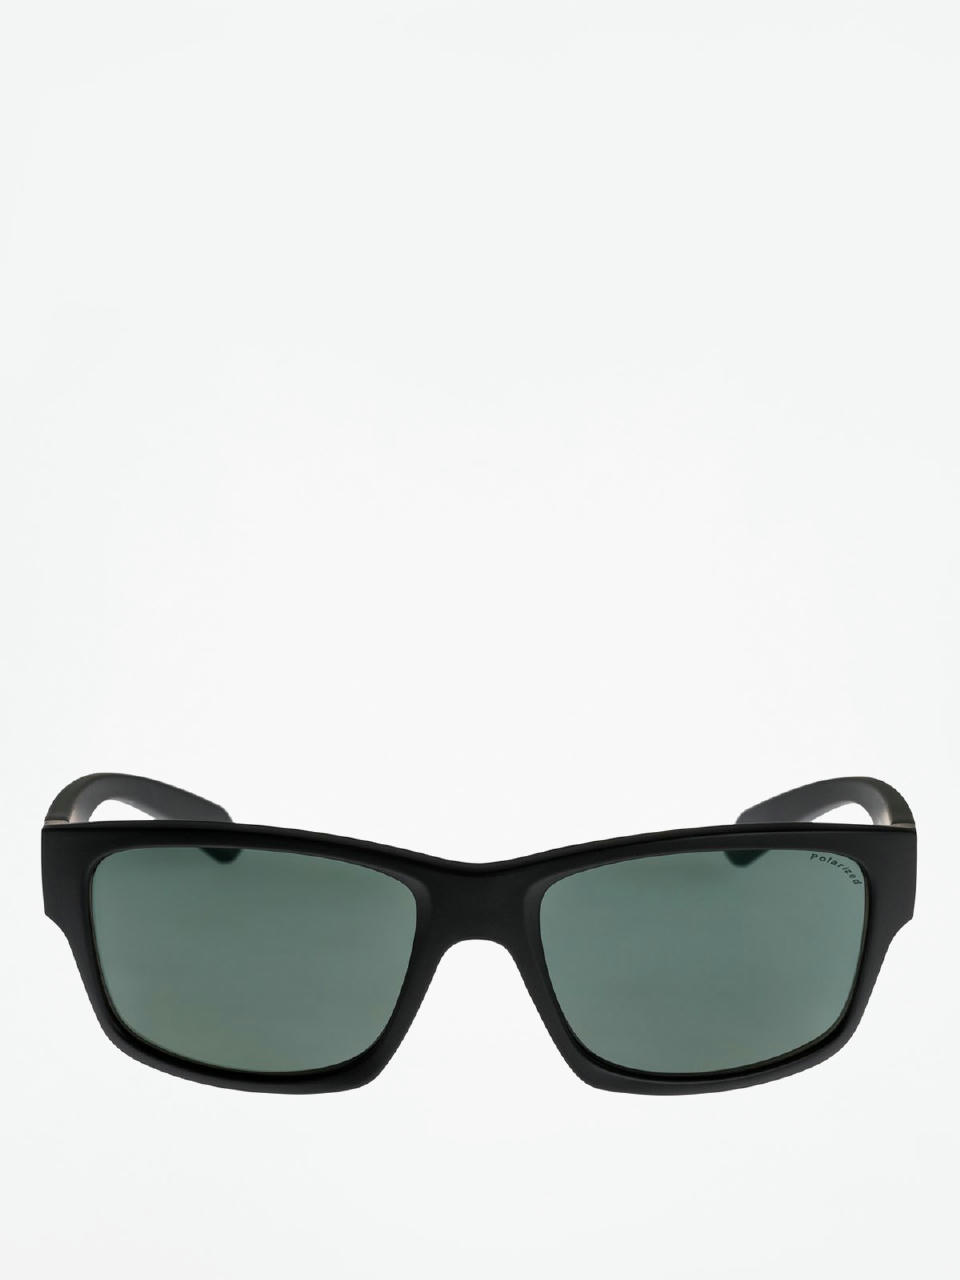 Quiksilver Sunglasses Off Road green) (black/plz